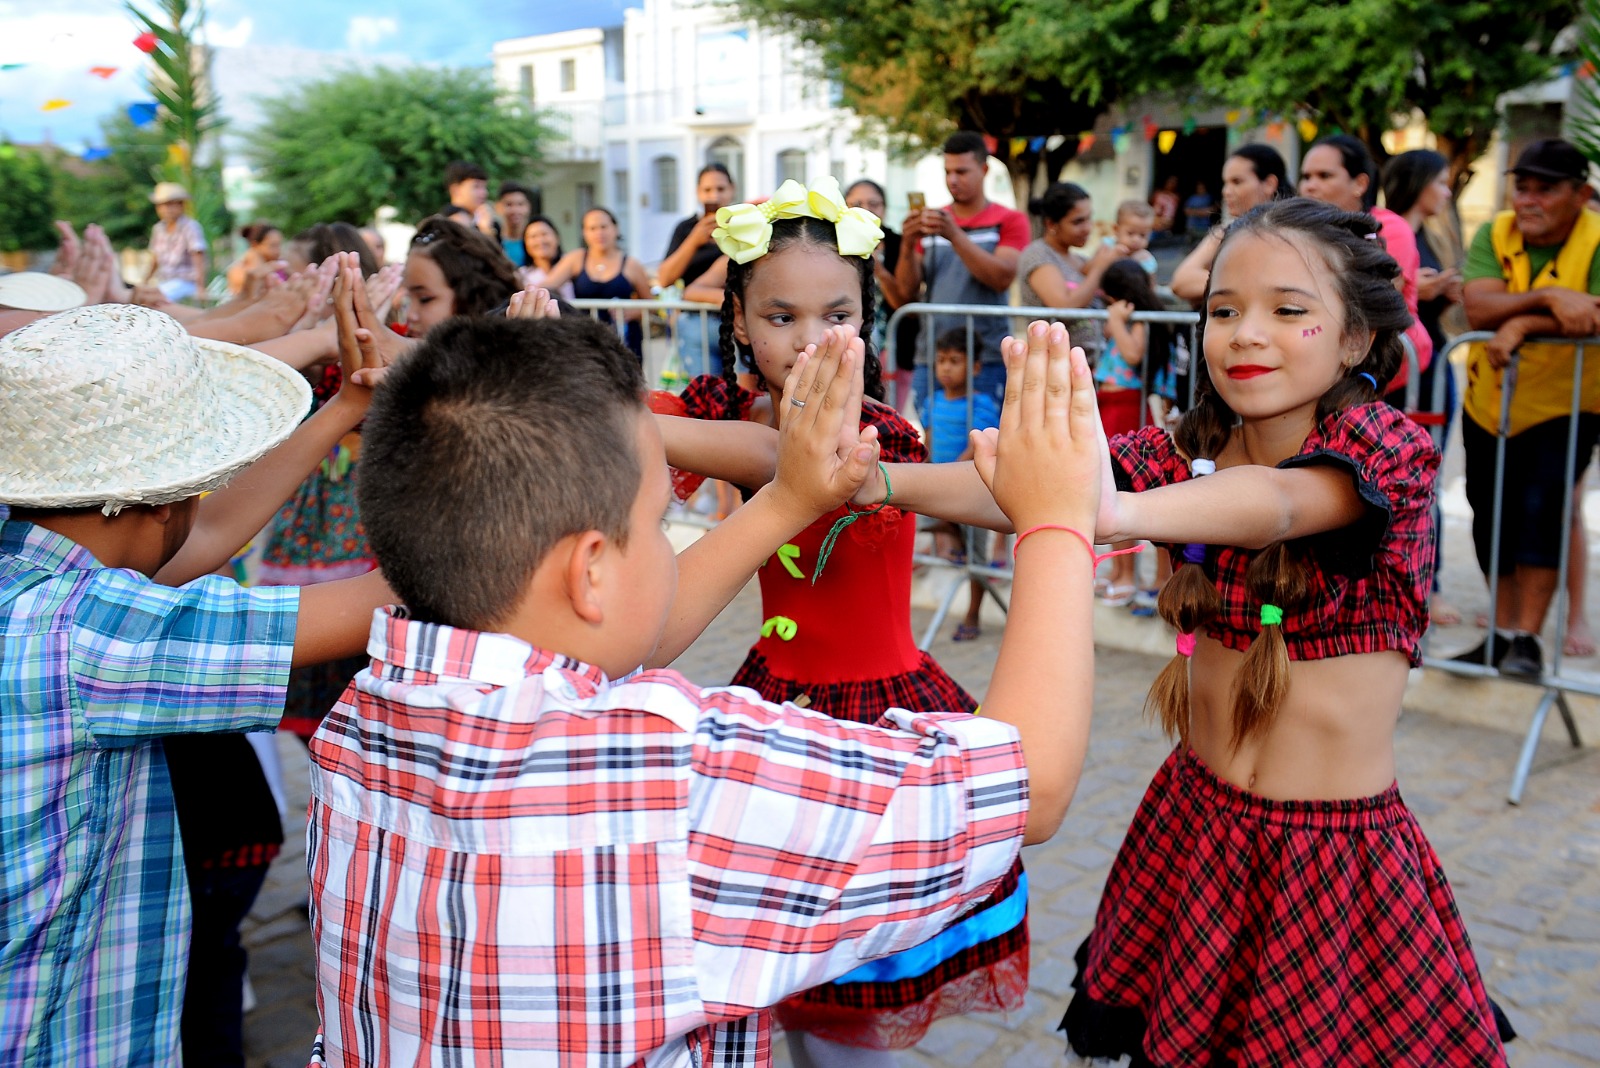 Festival-Quadrilhas-Escolares-1 Retorno às atividades: Festival de Quadrilhas movimenta comunidade escolar e atrai grande público